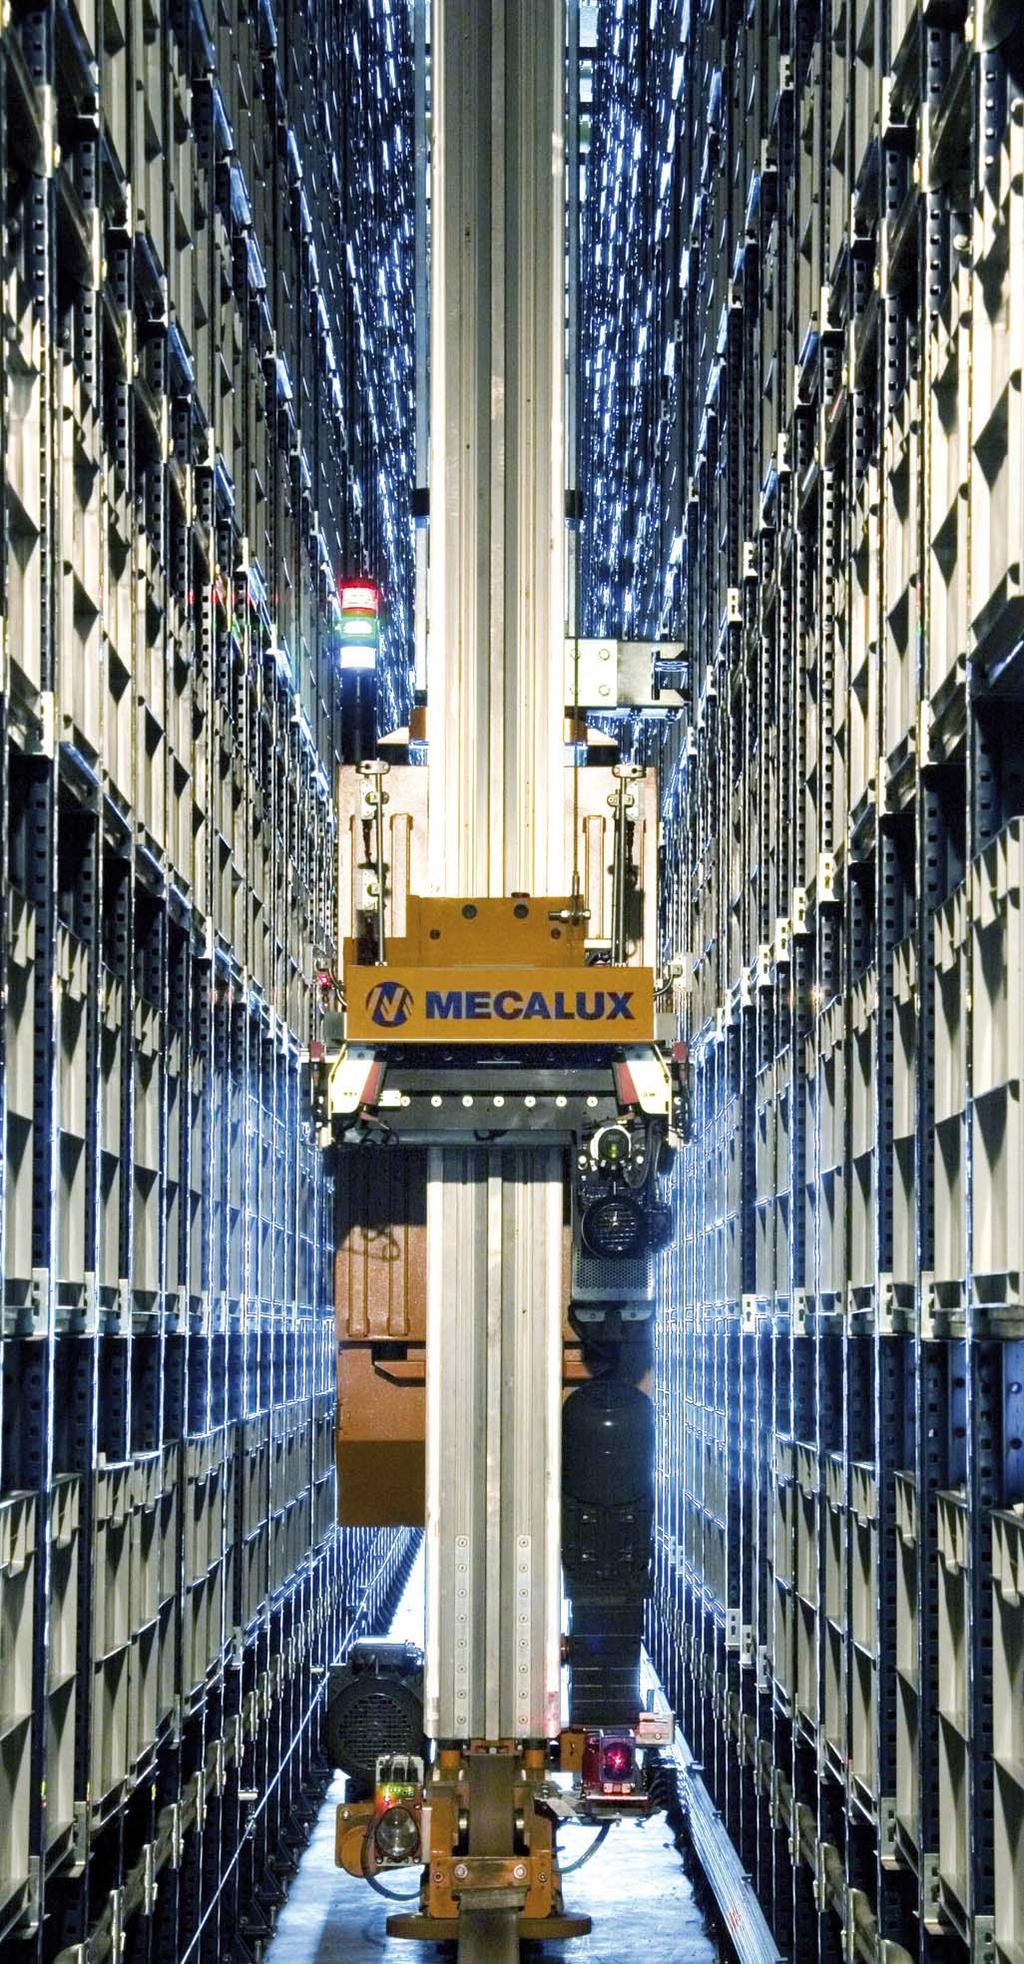 No Cotizadas MECALUX Descripción de la compañía Mecalux es una de las empresas líderes en el mercado de sistemas de almacenaje a nivel mundial.